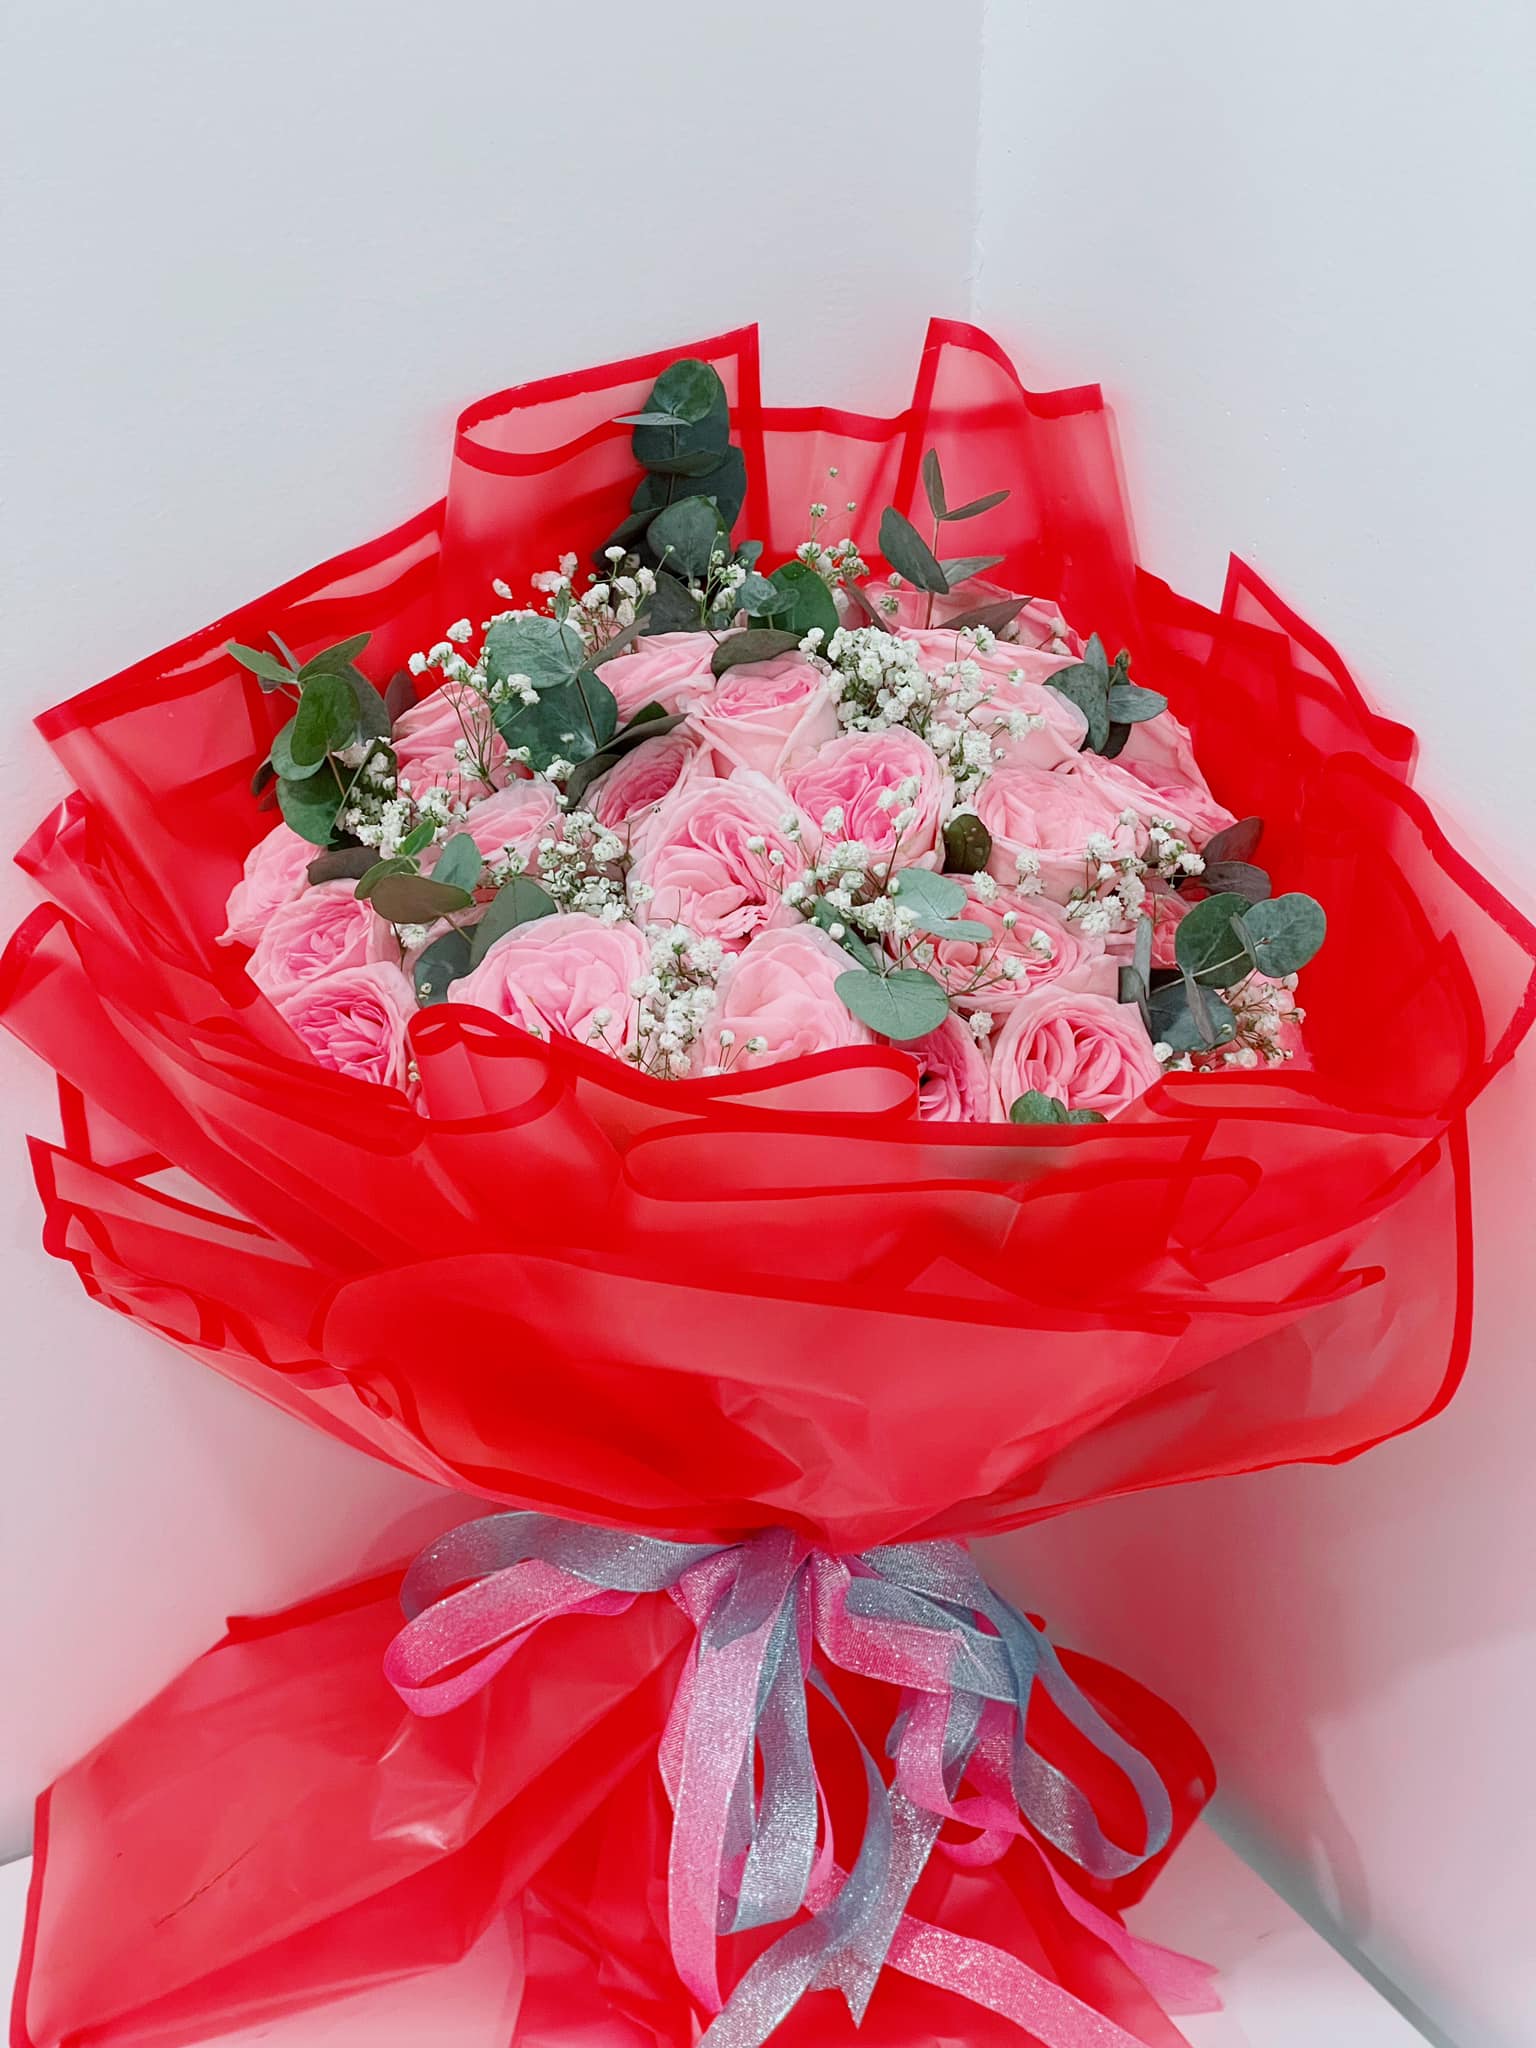 Fan giấu mặt gửi tặng hoa, Lý Nhã Kỳ khuyên nên dùng tiền đó làm thiện nguyện sẽ ý nghĩa hơn - ảnh 4